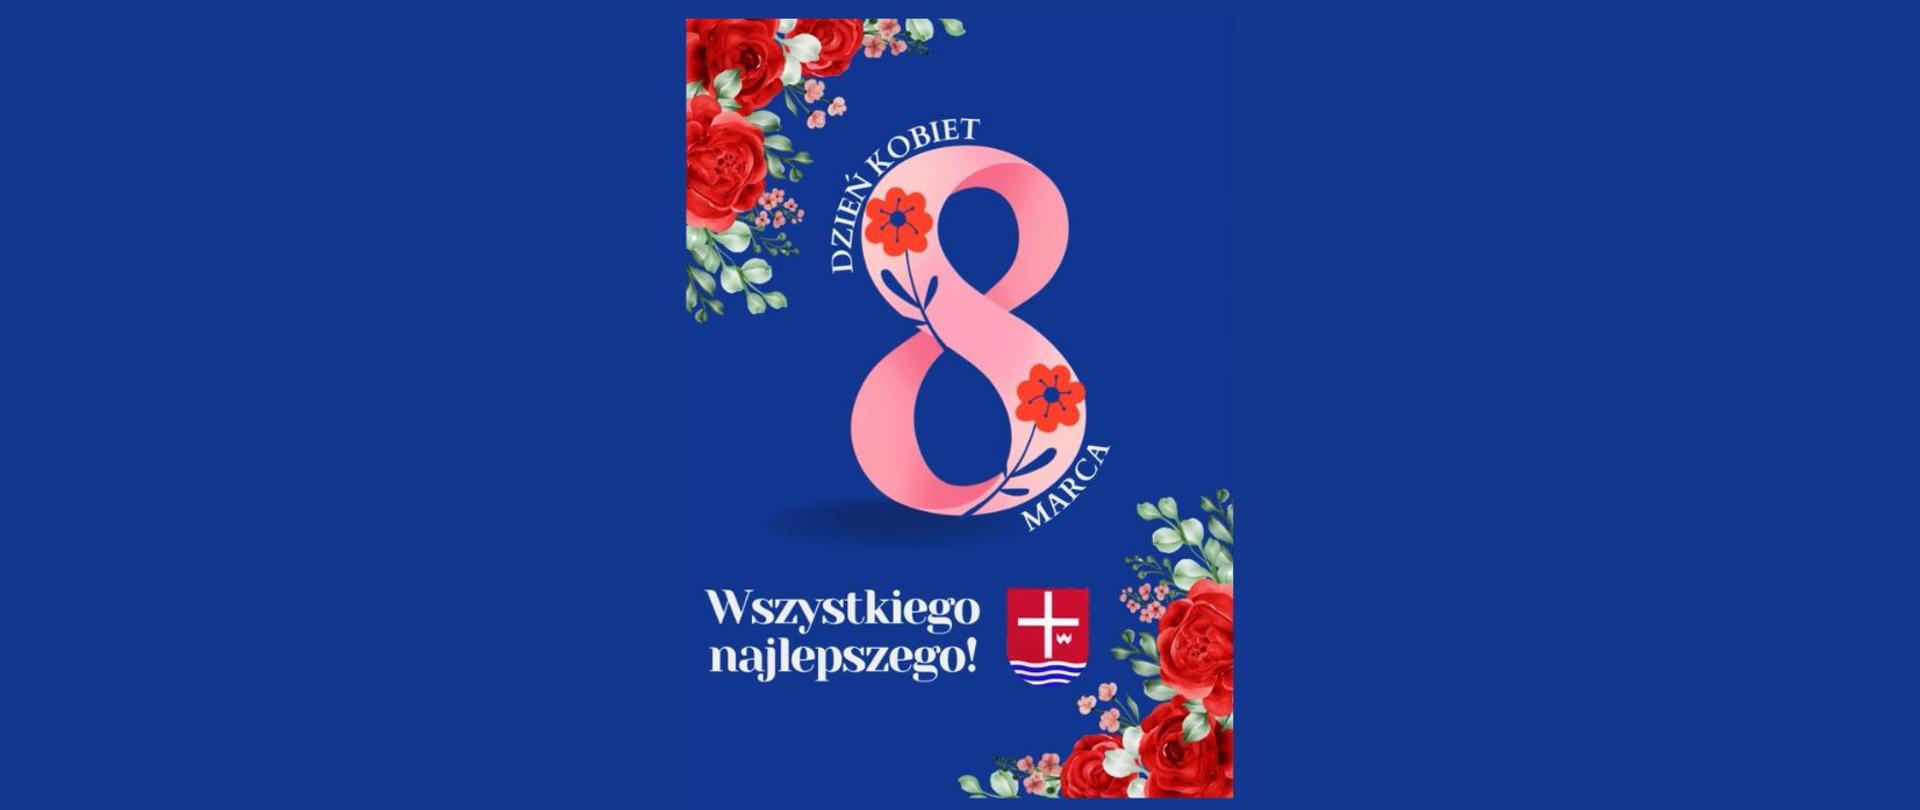 Grafika z dużą cyfrą 8 symbolizującą Dzień kobiet z napisem Wszystkiego najlepszego!, herbem powiatu i dwoma bukiecikami różyczek w dwóch rogach na granatowym tle.